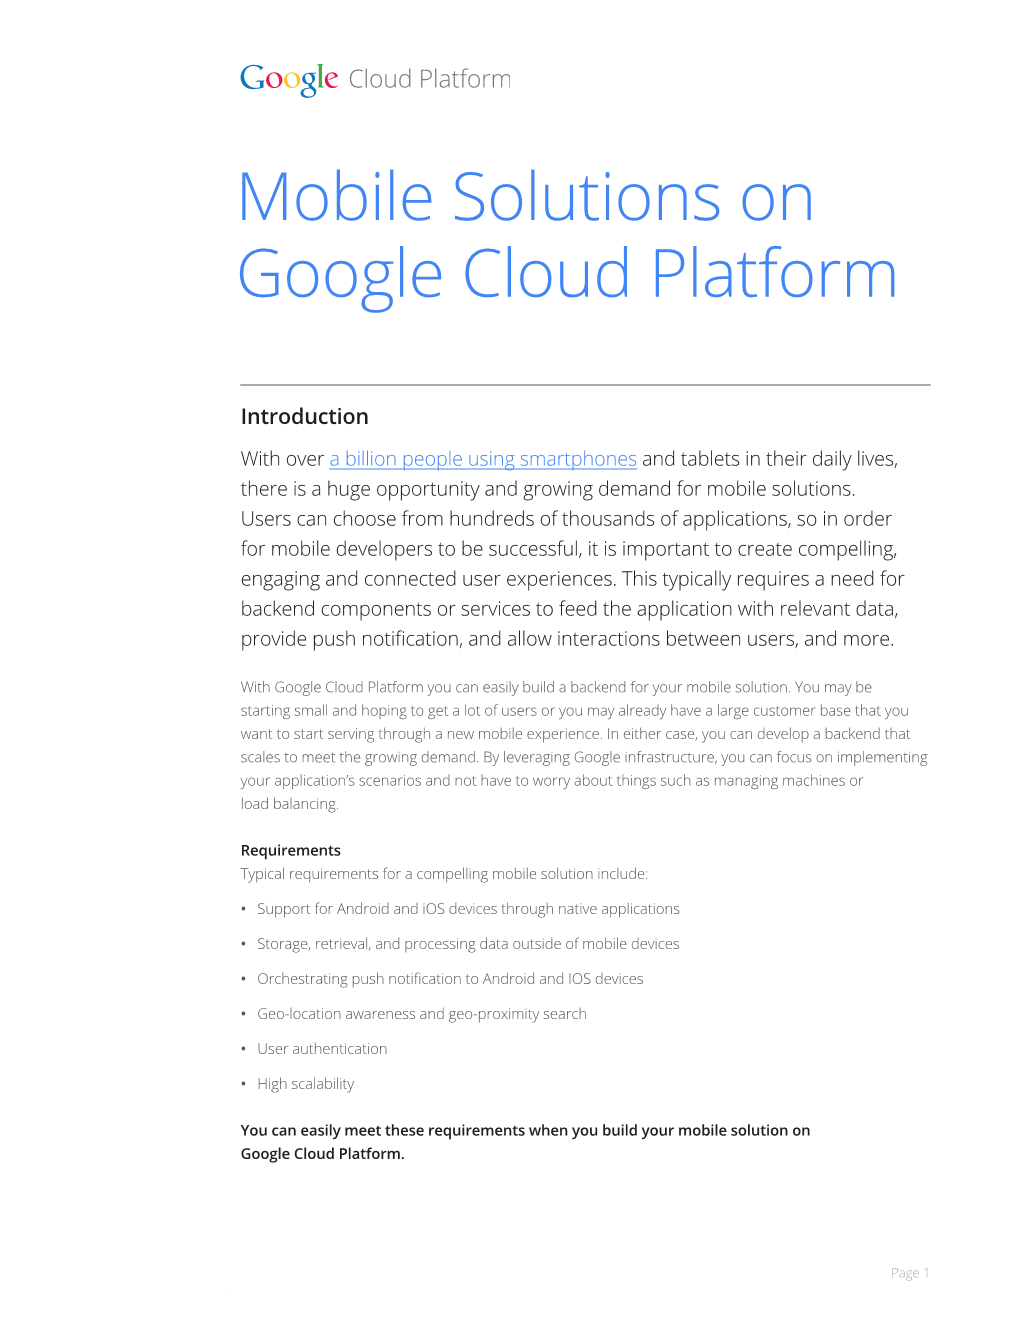 Mobile Solutions on Google Cloud Platform